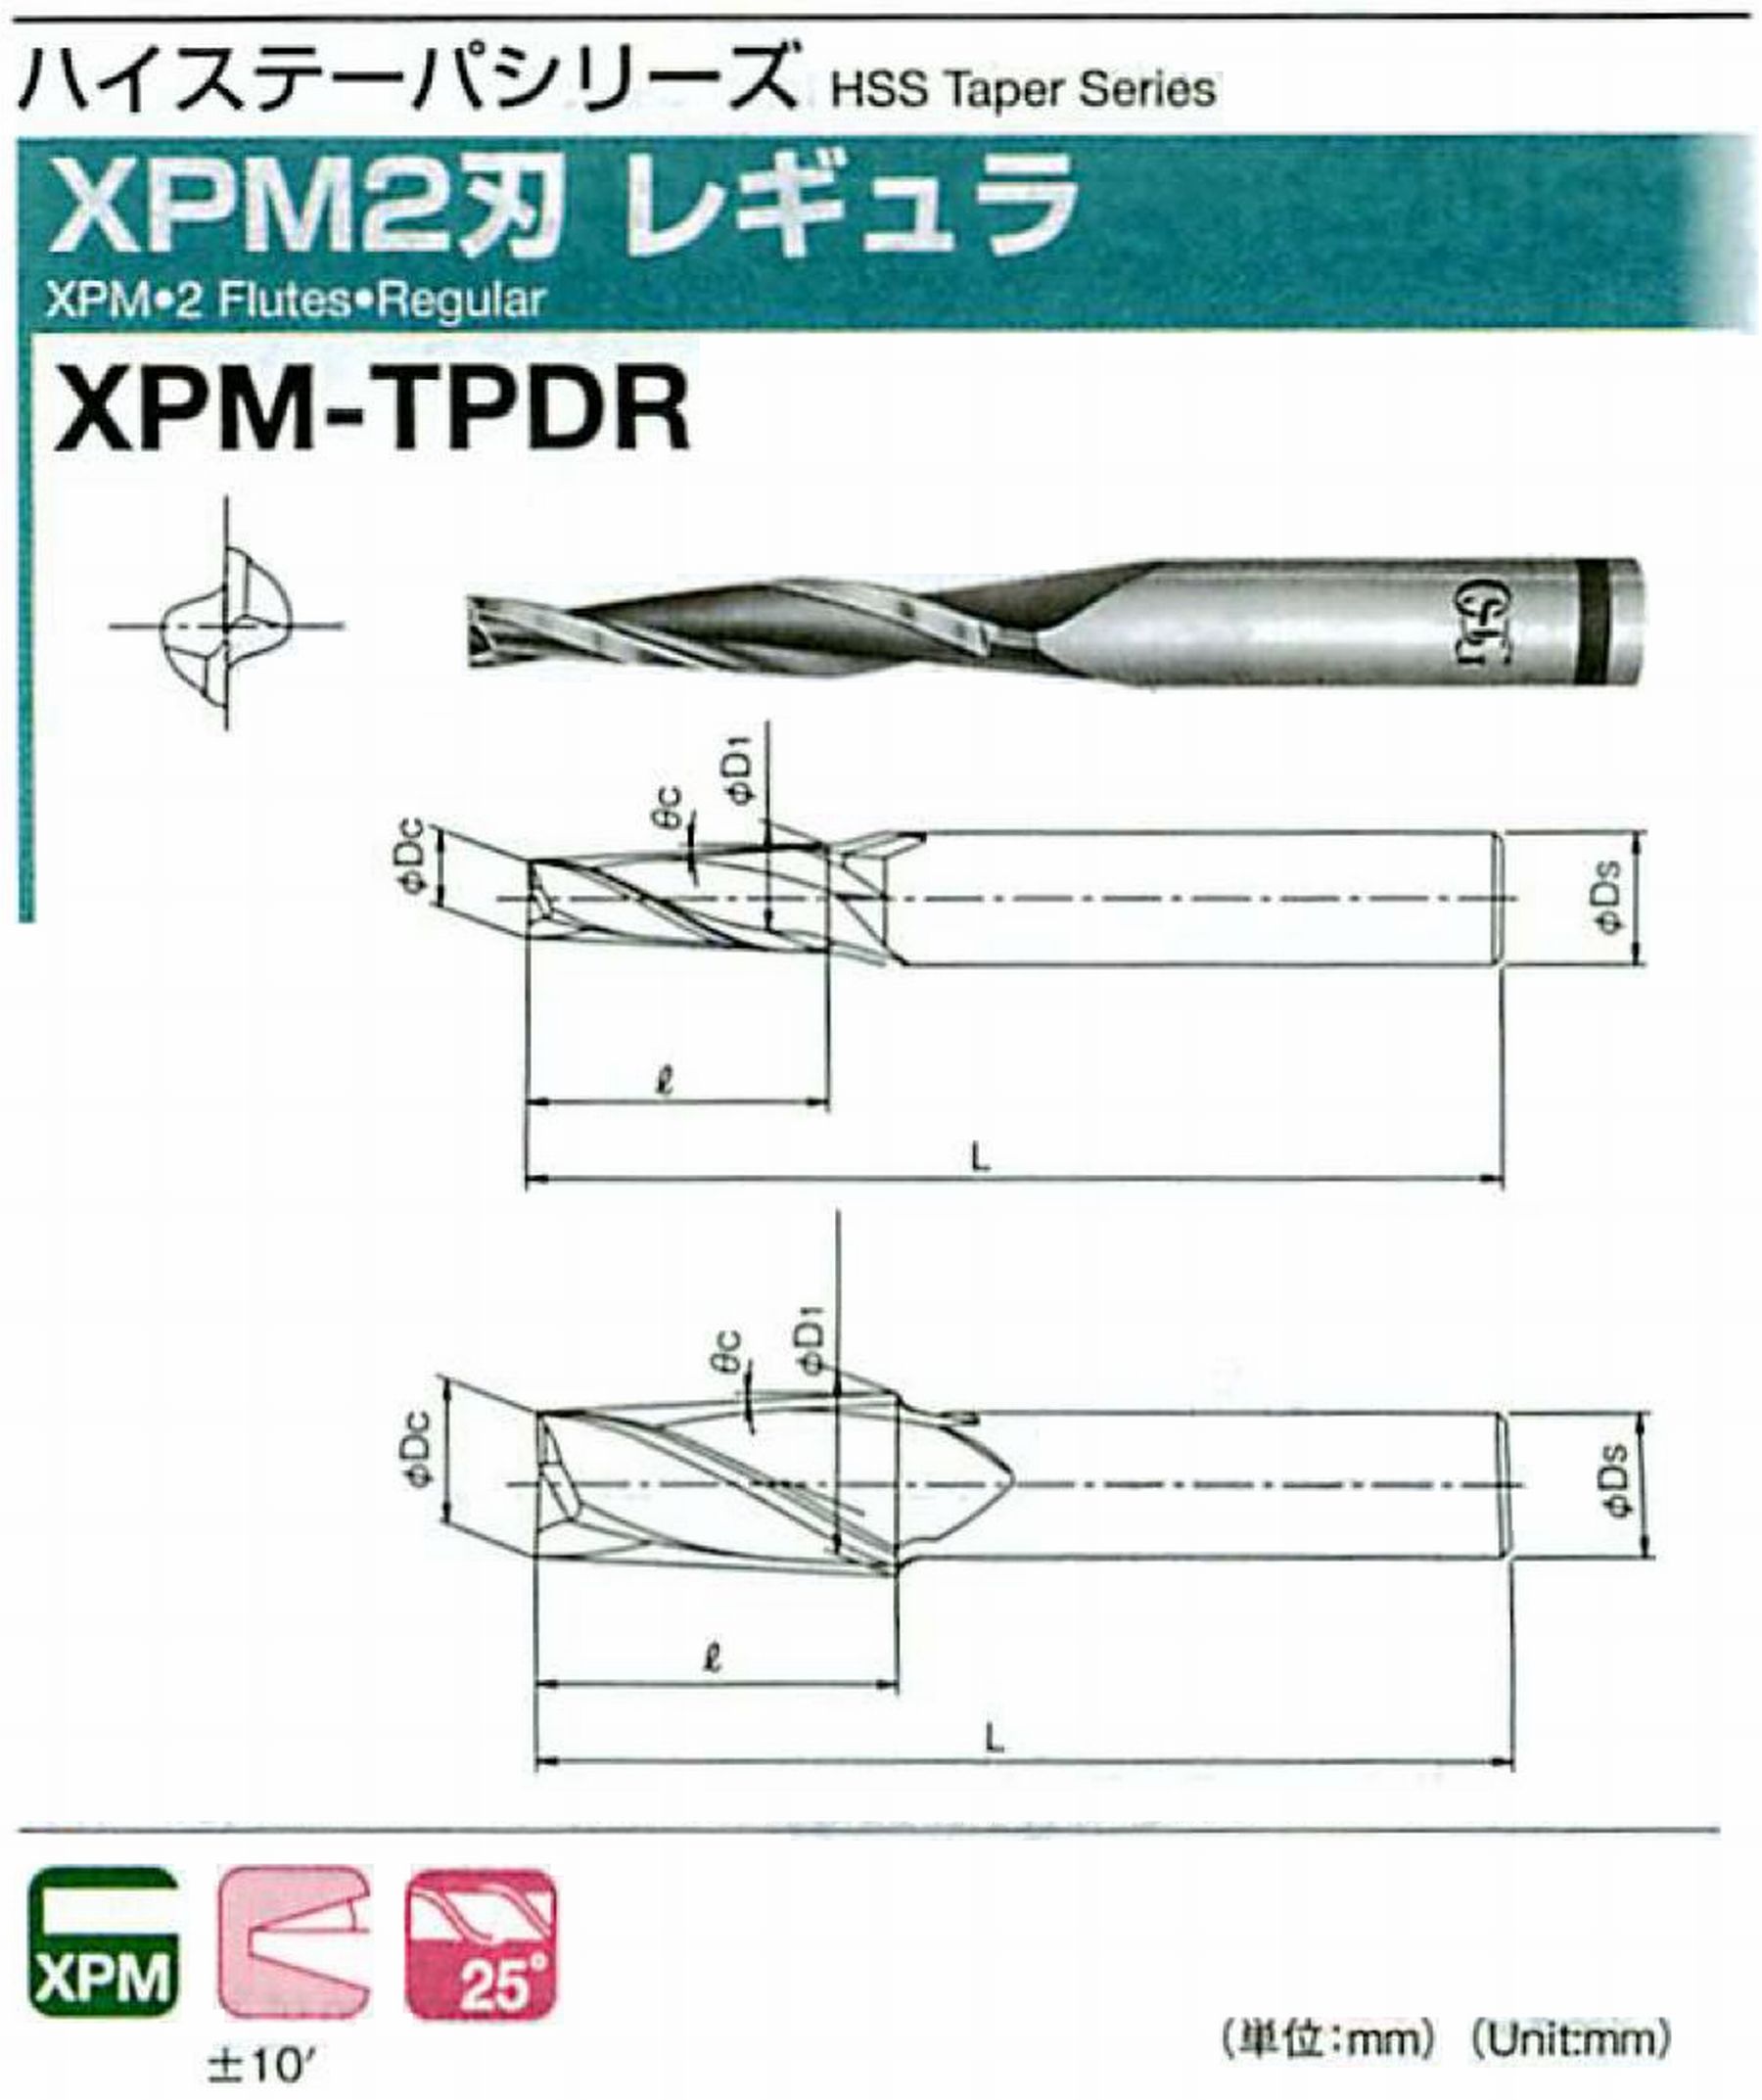 オーエスジー/OSG XPM2刃 レギュラ XPM-TPDR 外径×刃部テーパ半角10×0.5°全長85 刃長28 シャンク径12mm 大端径10.49